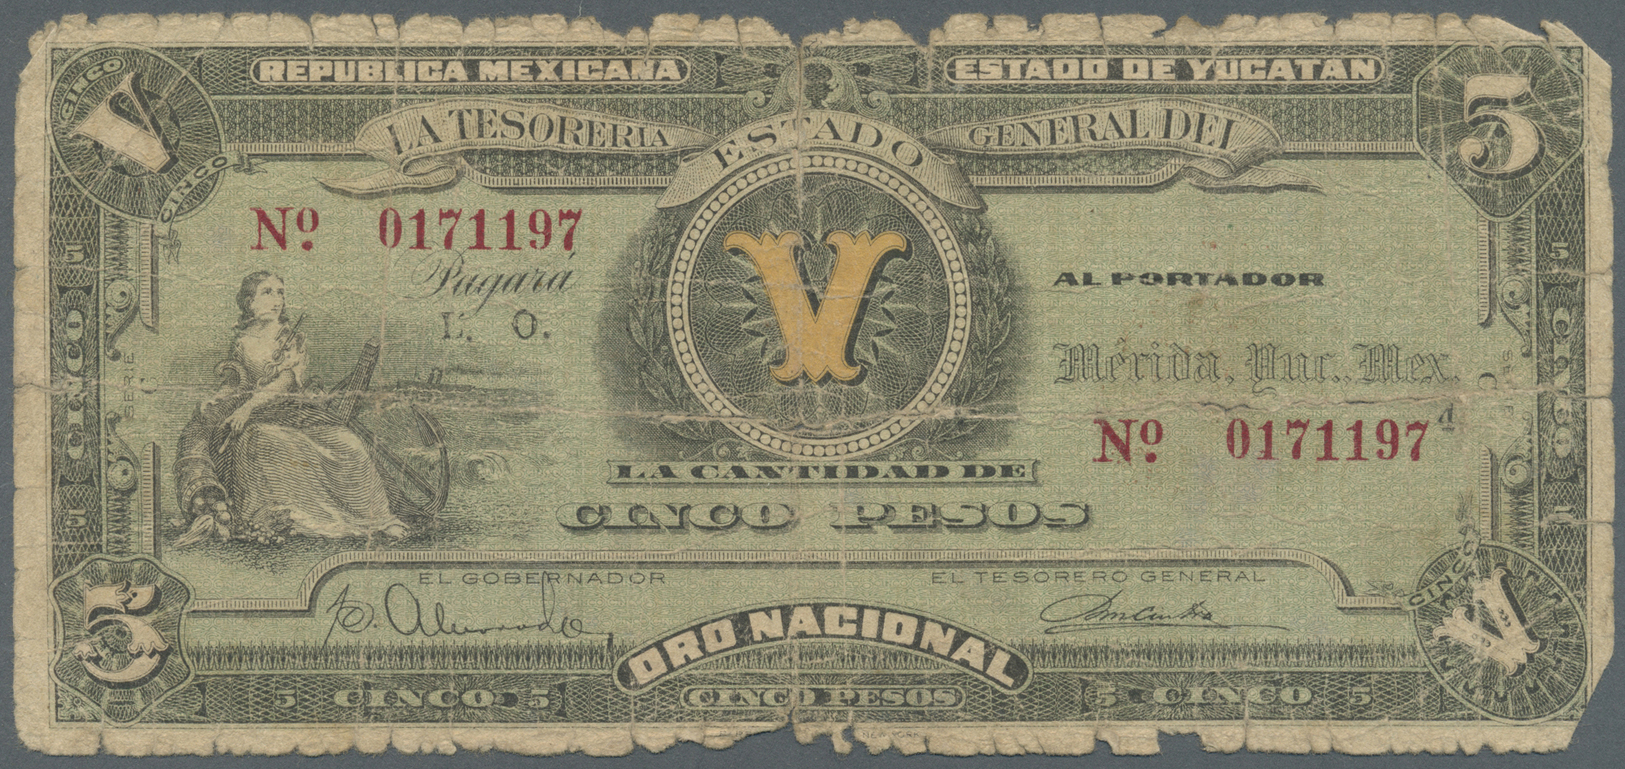 01722 Mexico: Yucatan, Tesoreria General Del Estado 5 Pesos 1916 P. S1137, Very Strong Used With Lots Of Border Wear, St - Mexico